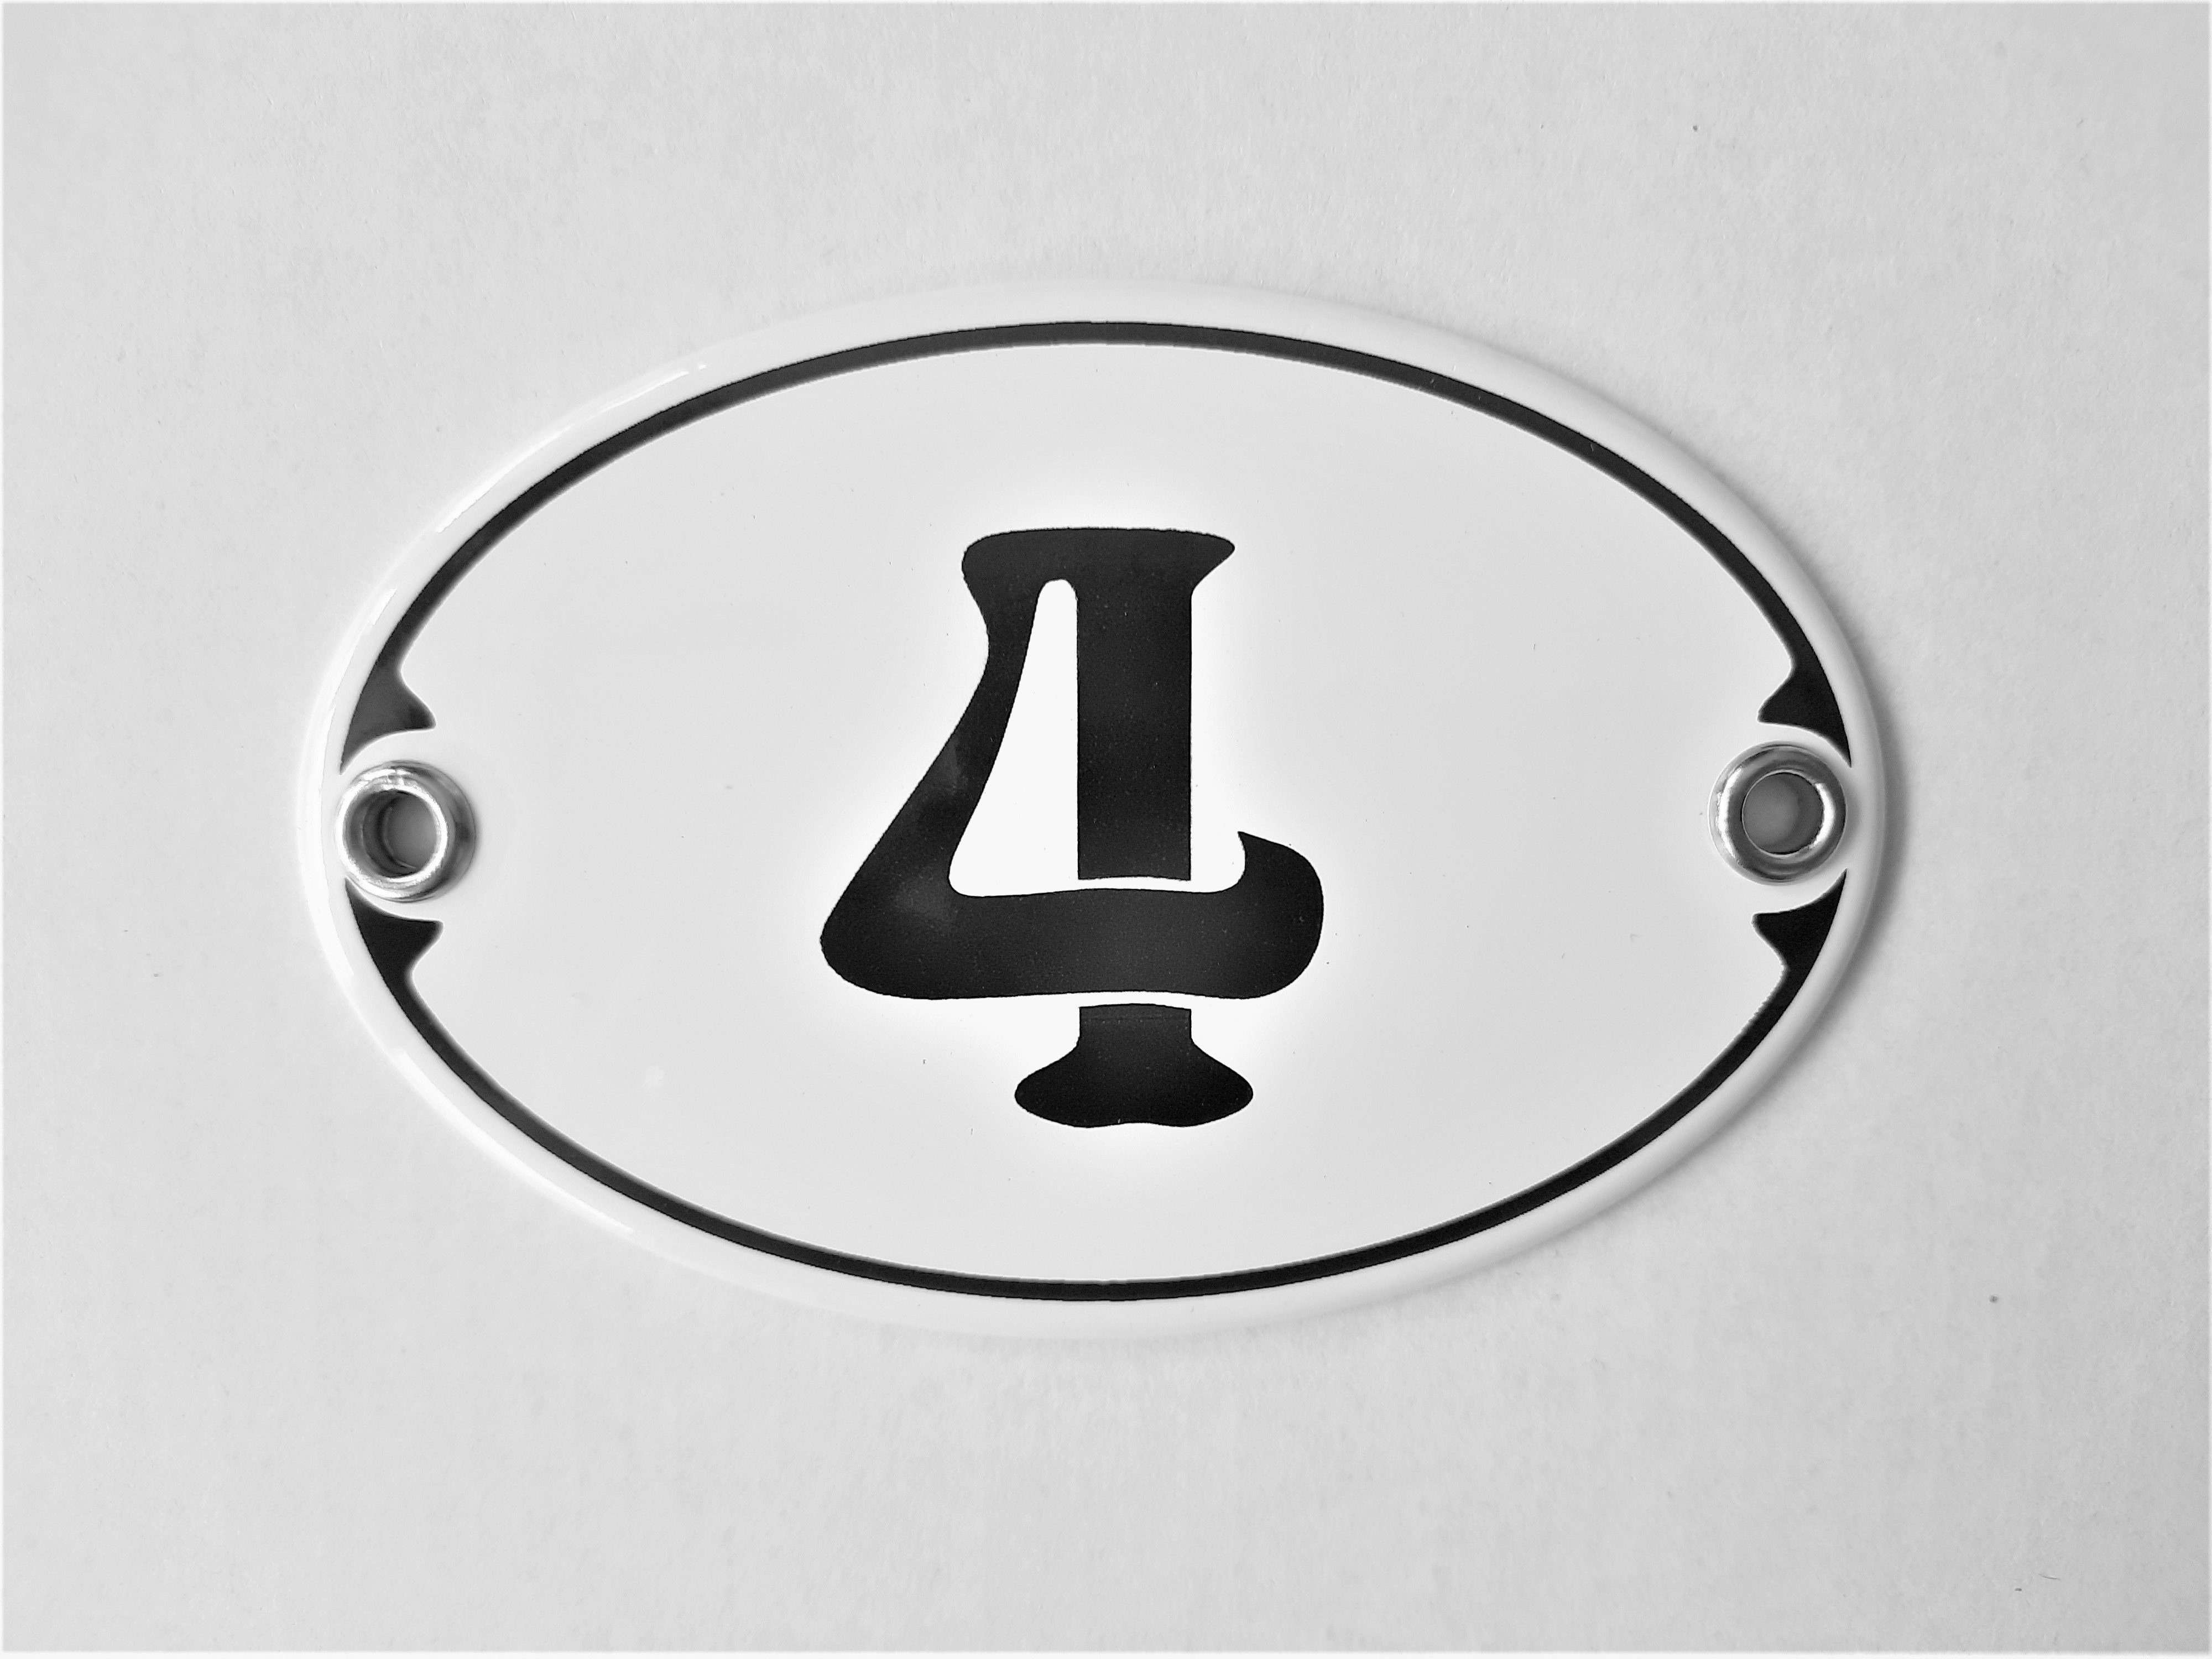 Elina Email Schilder "4", Hausnummer Zahlenschild (Emaille/Email)